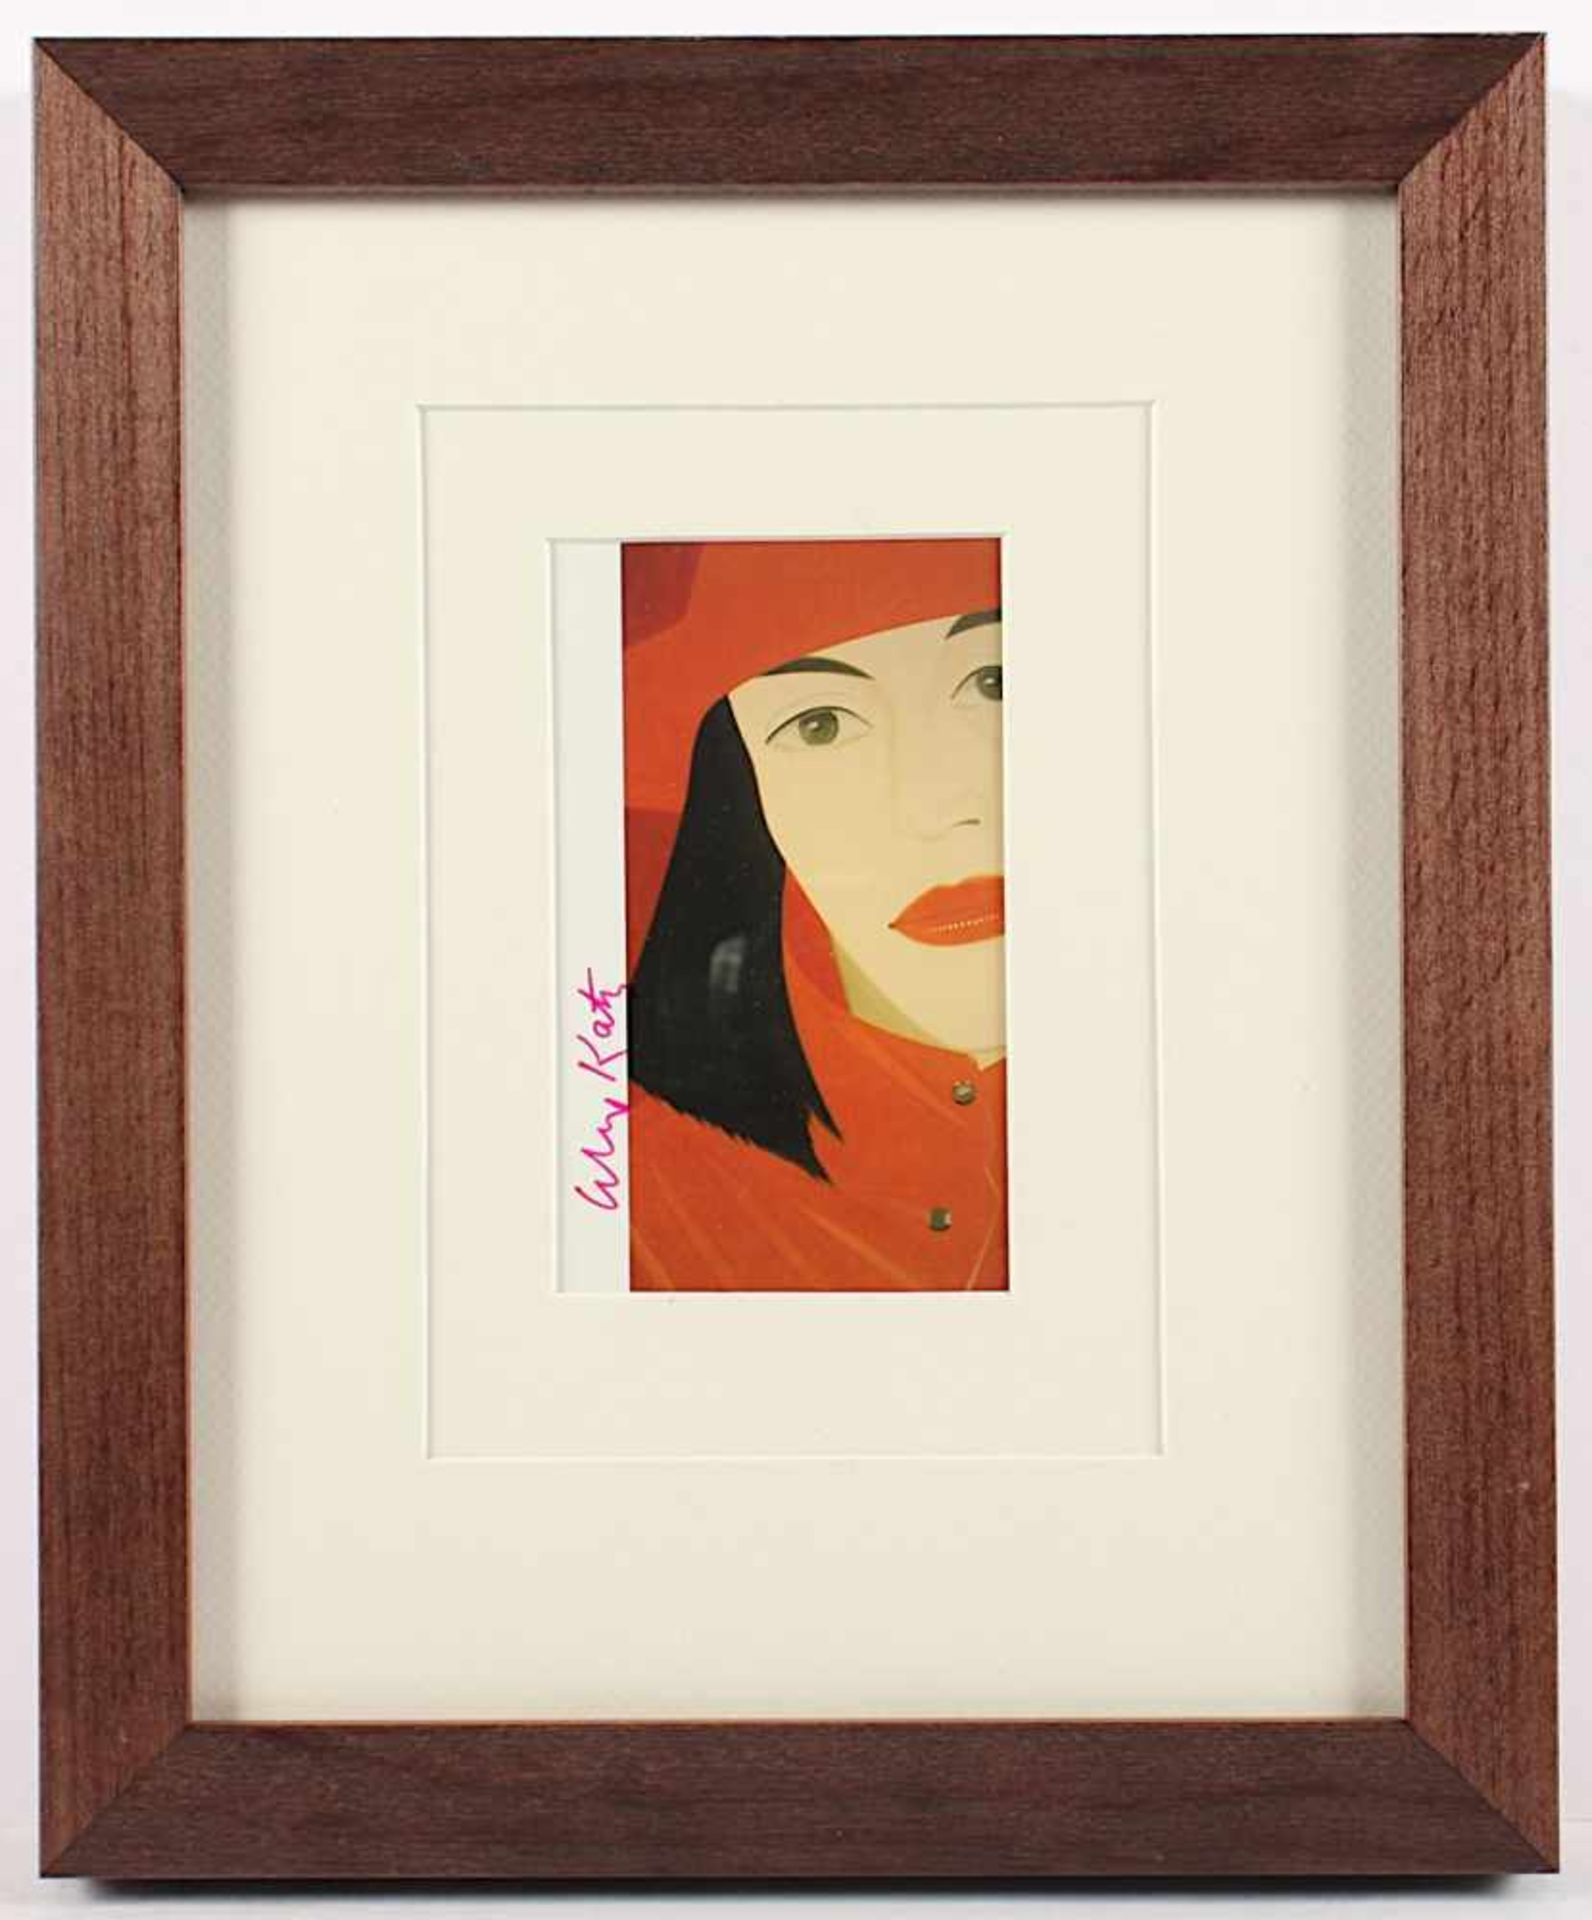 KATZ, Alex, "Red coat", Multiple (Farboffset als Kunstpostkarte), 13,5 x 10, handsigniert, 1982, R.